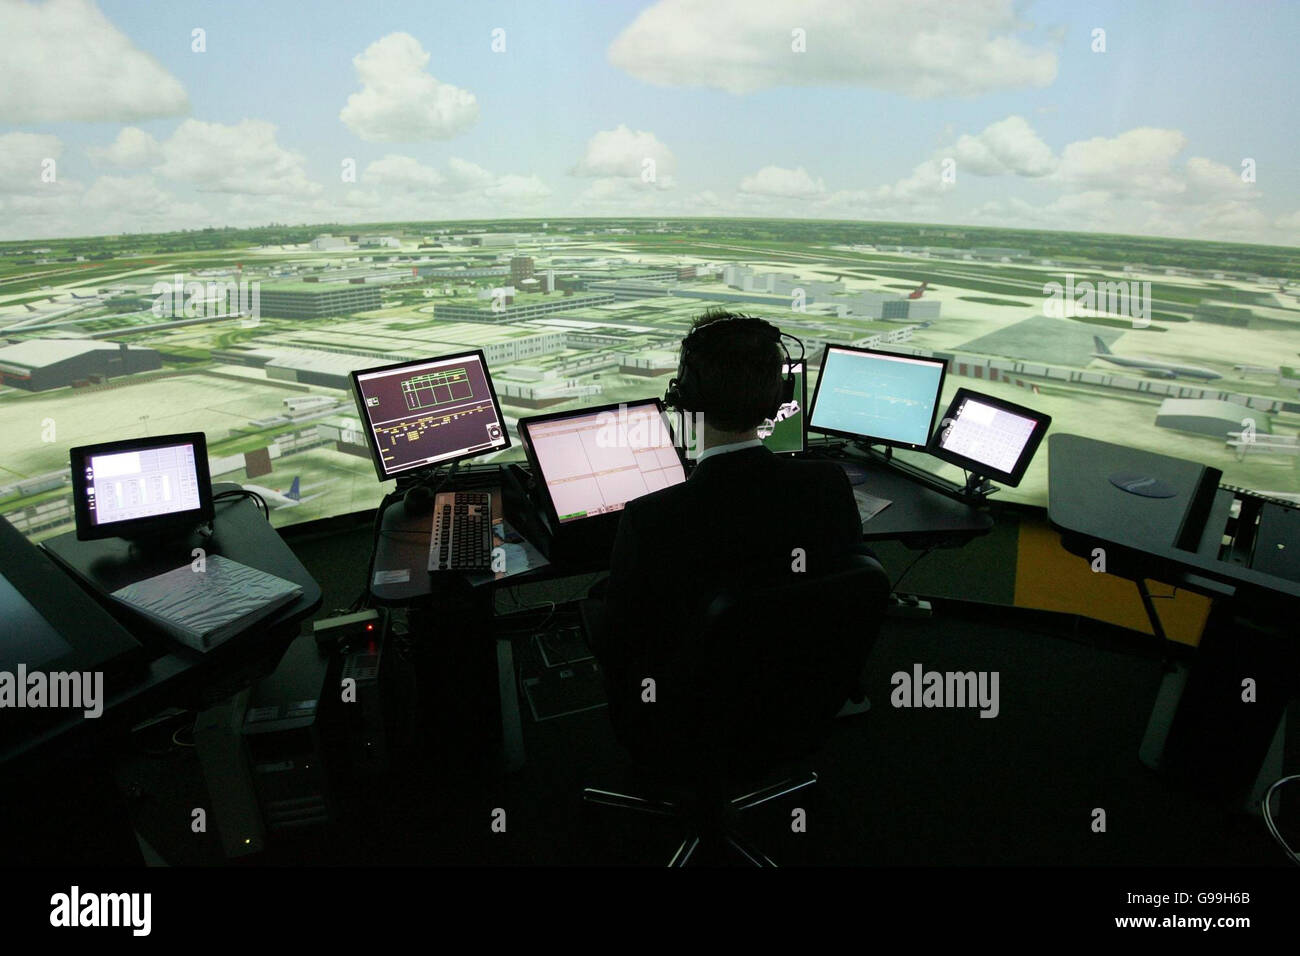 Dale Reeson, un controlador de tráfico aéreo se encuentra en el nuevo simulador de torre de control de Heathrow de 360 grados en la torre de control de tráfico aéreo del aeropuerto de Heathrow. Foto de stock